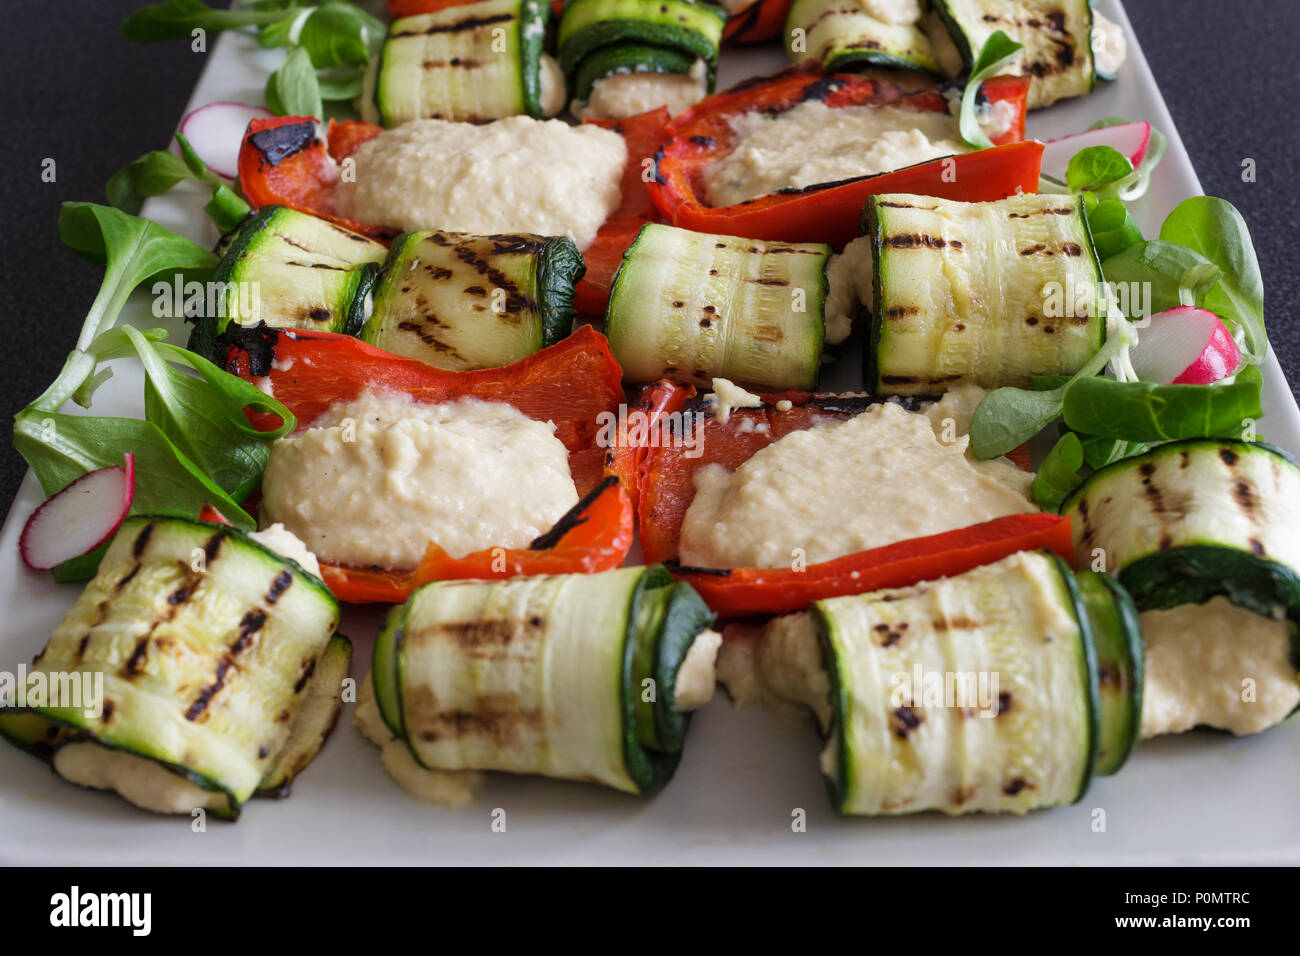 Peperoni e zucchine con hummus salsa. Una miscela di piatti mediterranei e cucina araba. La cucina casalinga. Foto Stock